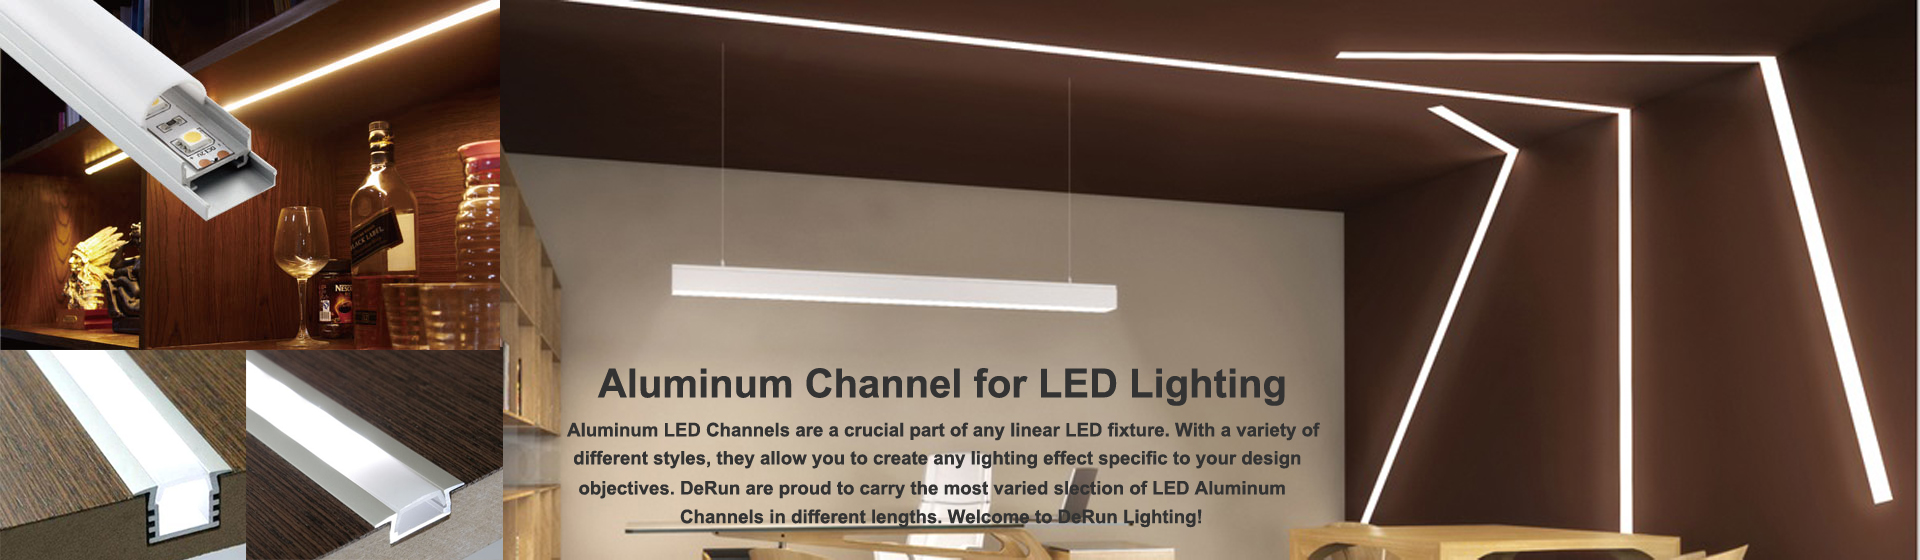 ช่องอลูมิเนียมนำ - ไฟ LED เชิงเส้น